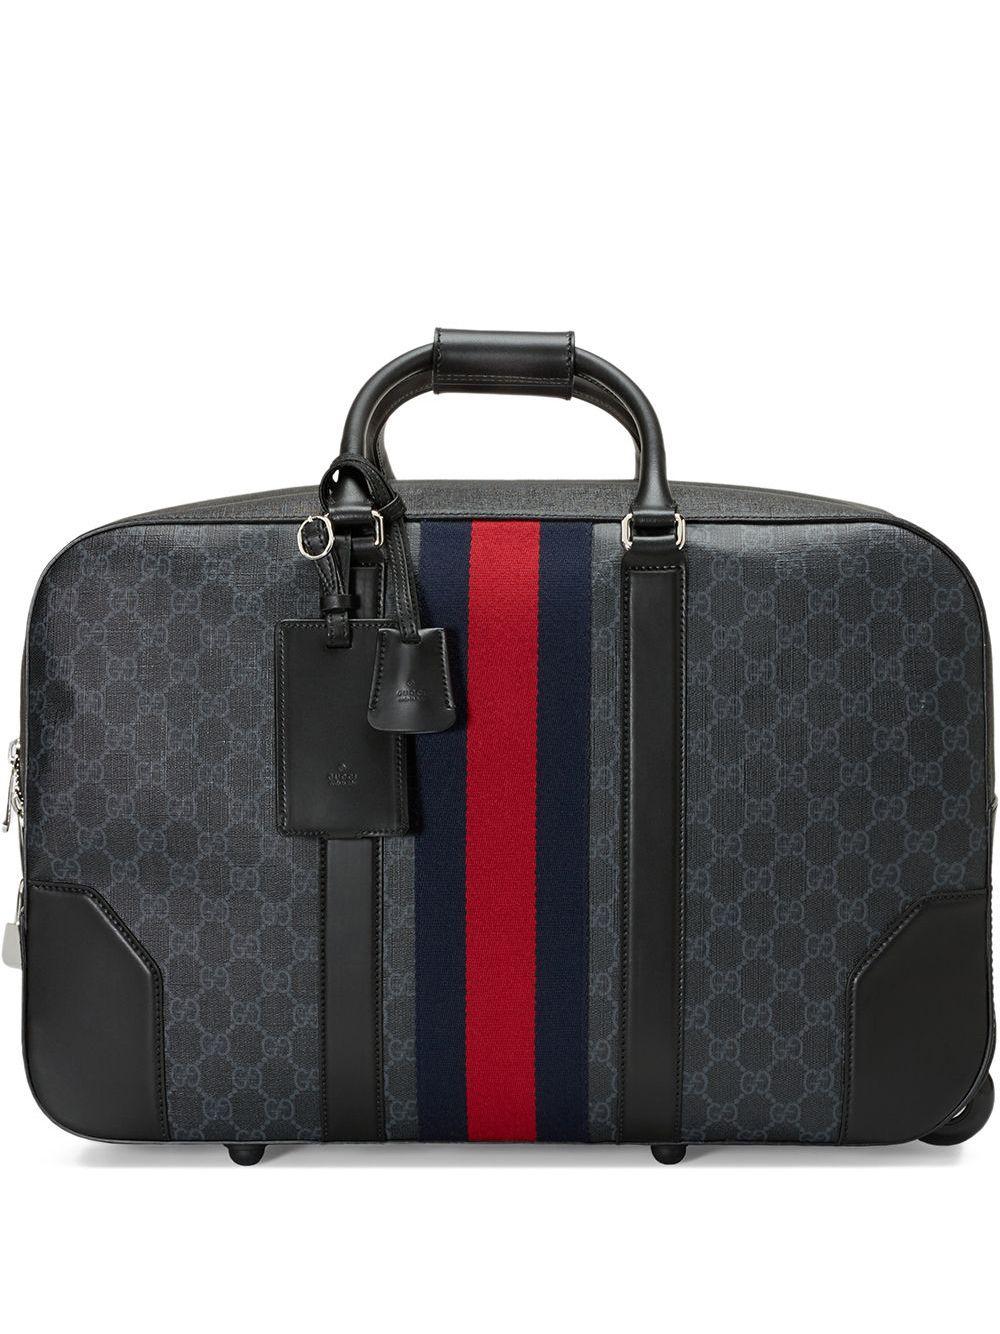 Gucci GG Supreme Carry-On Duffle Bag - Black Luggage and Travel, Handbags -  GUC475155